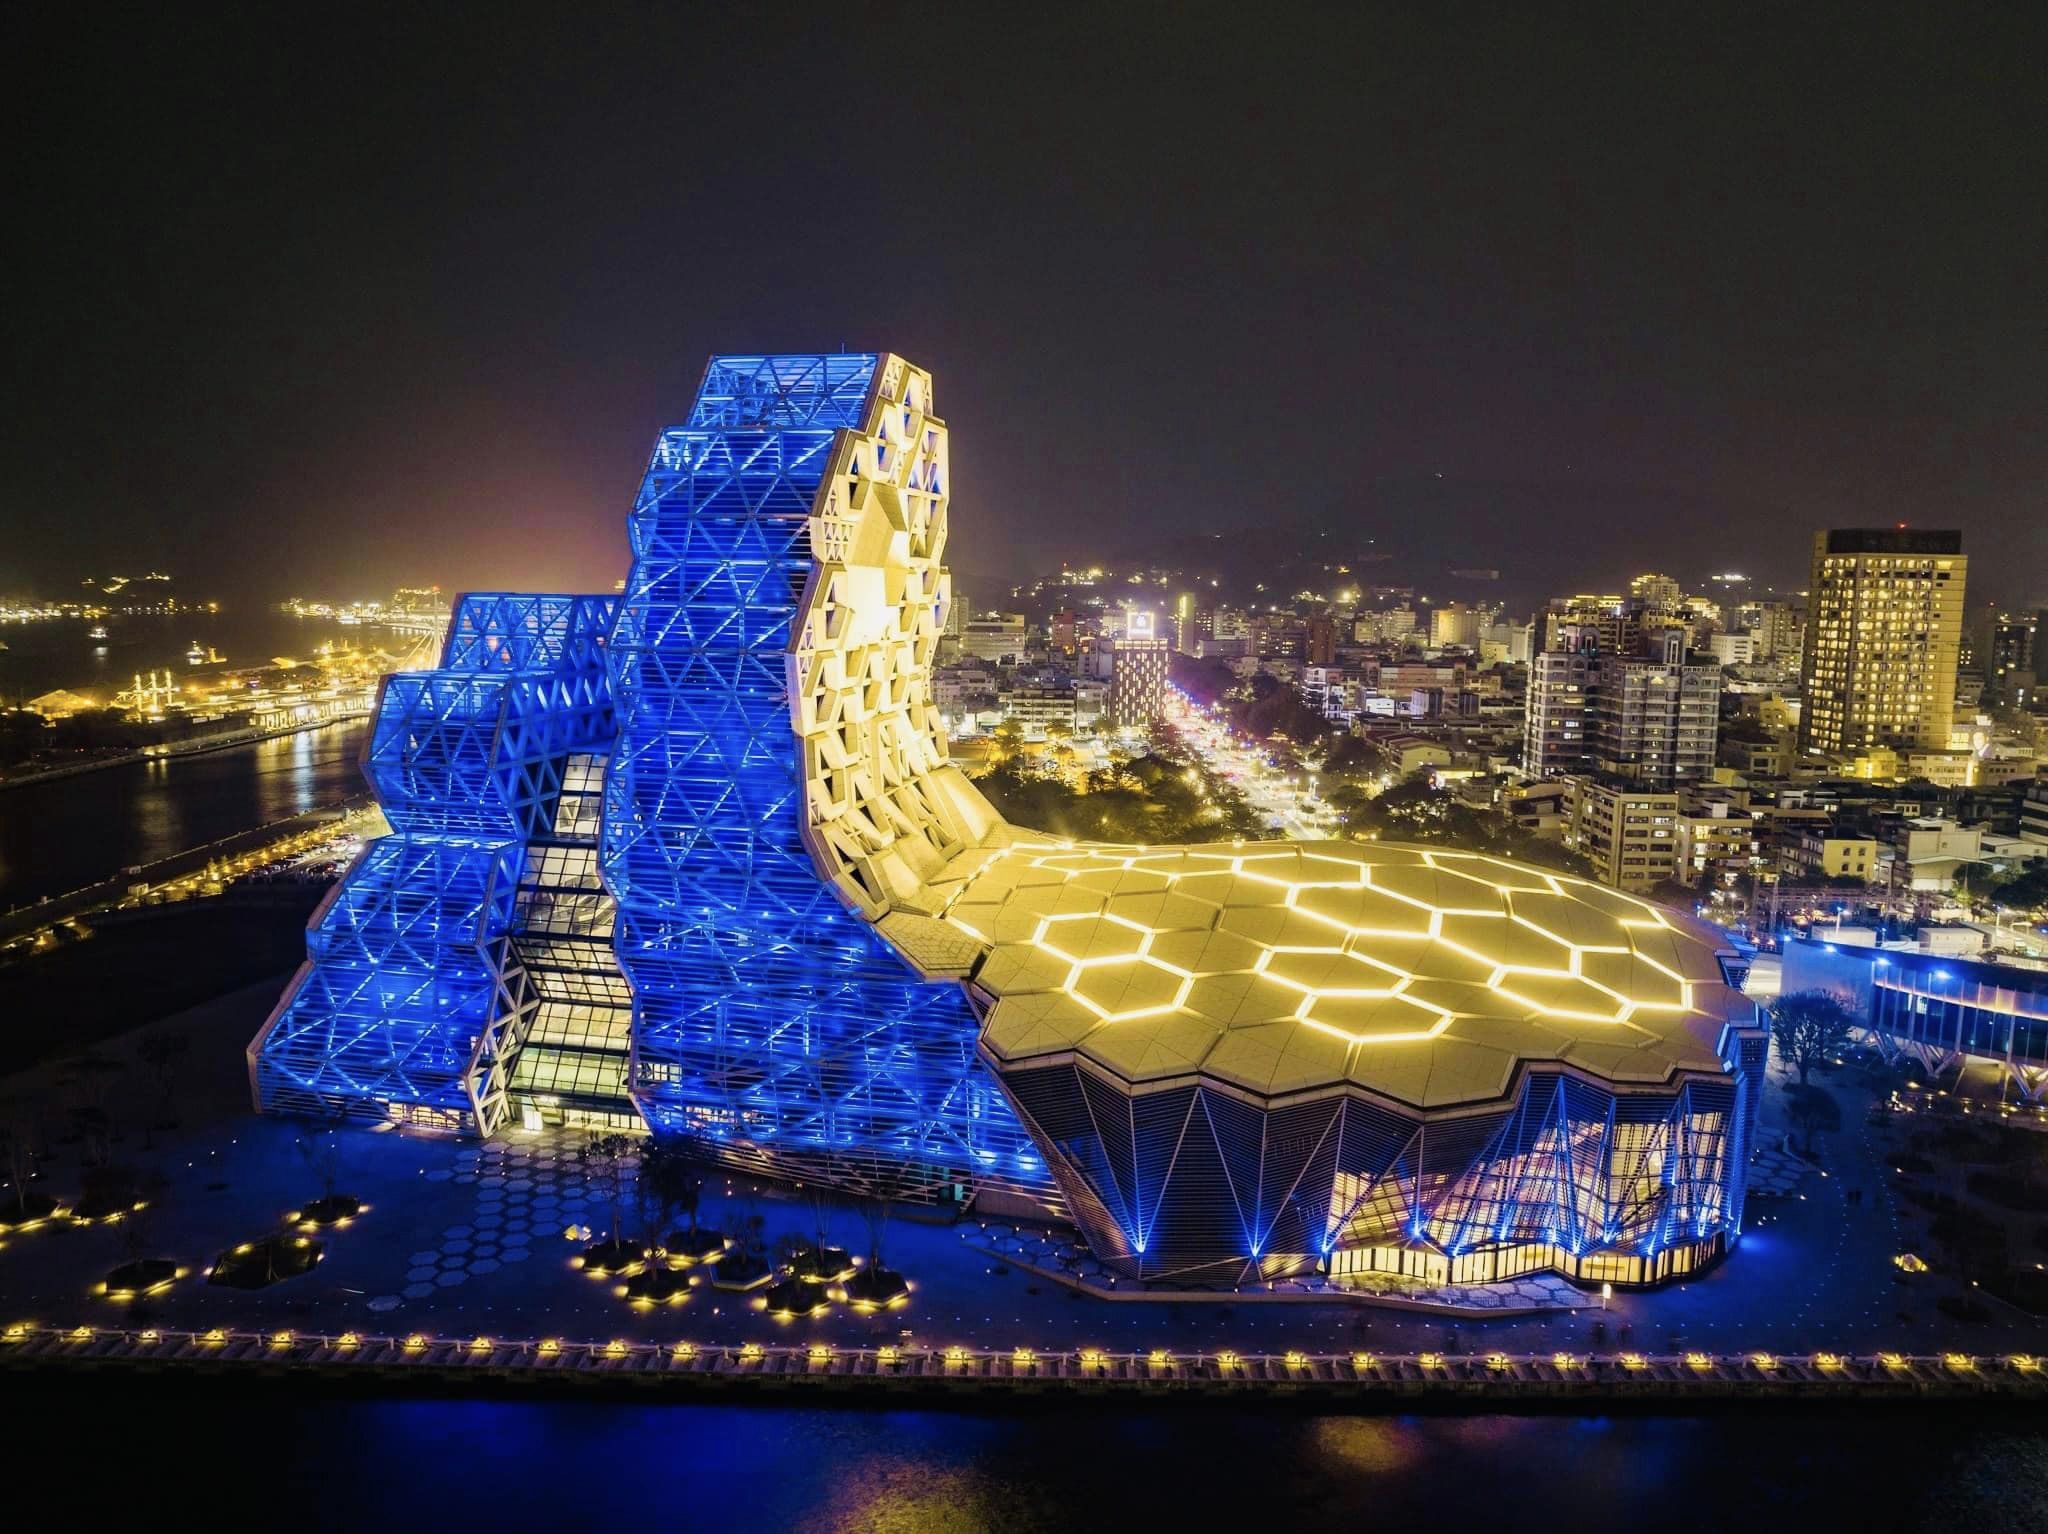 Trung tâm Âm nhạc Cao Hùng được bao phủ bởi sắc vàng, xanh – hai màu sắc trên quốc kỳ của Ukraina. (Ảnh: Lấy từ Facebook Kenny Chen)